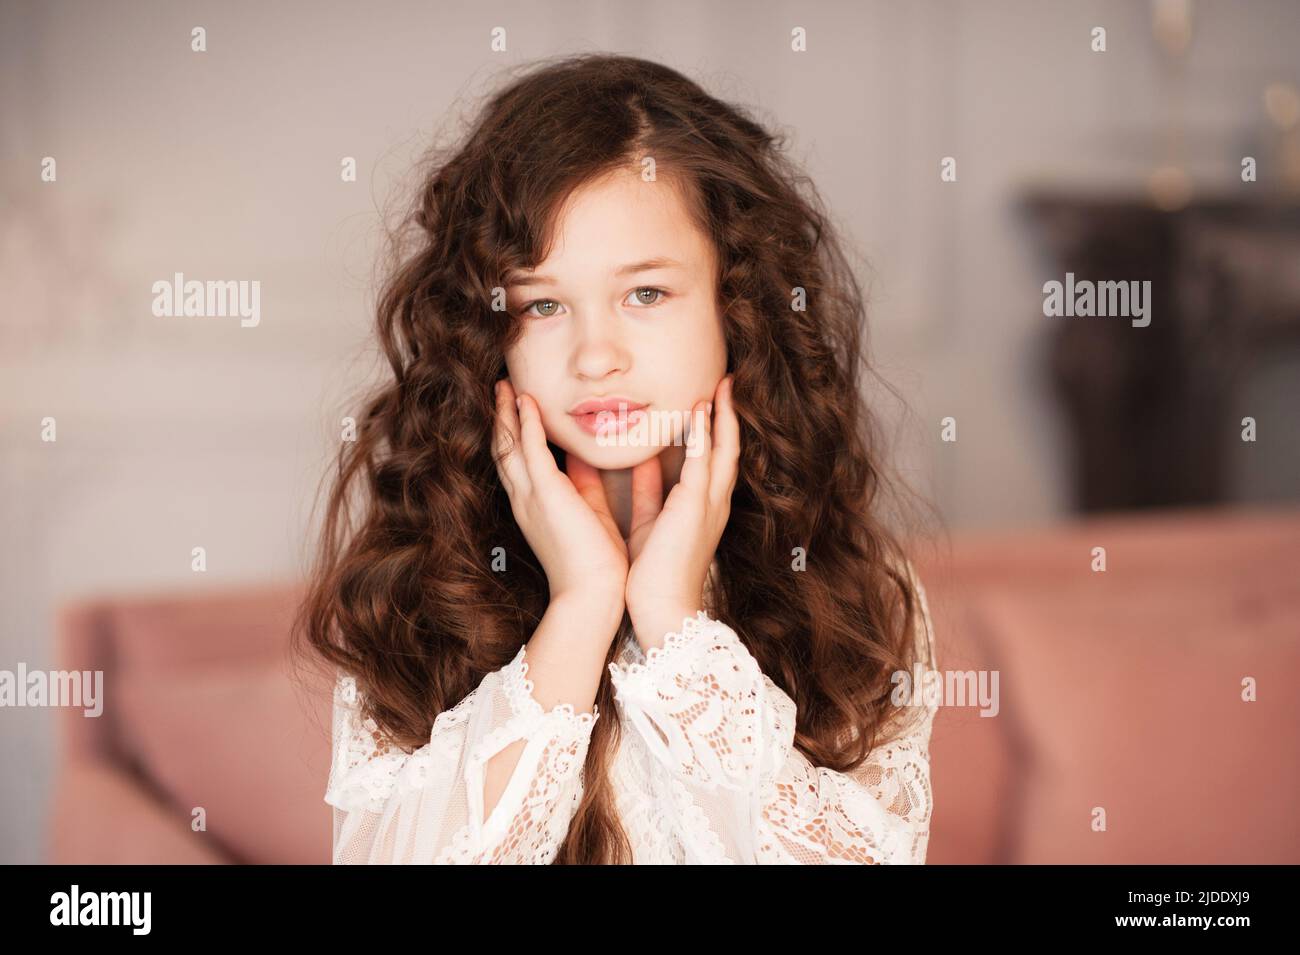 Bonita hermosa niña de 10-12 años con largo pelo rubio oscuro en la habitación de cerca. Retrato de joven adolescente. Infancia. Foto de stock